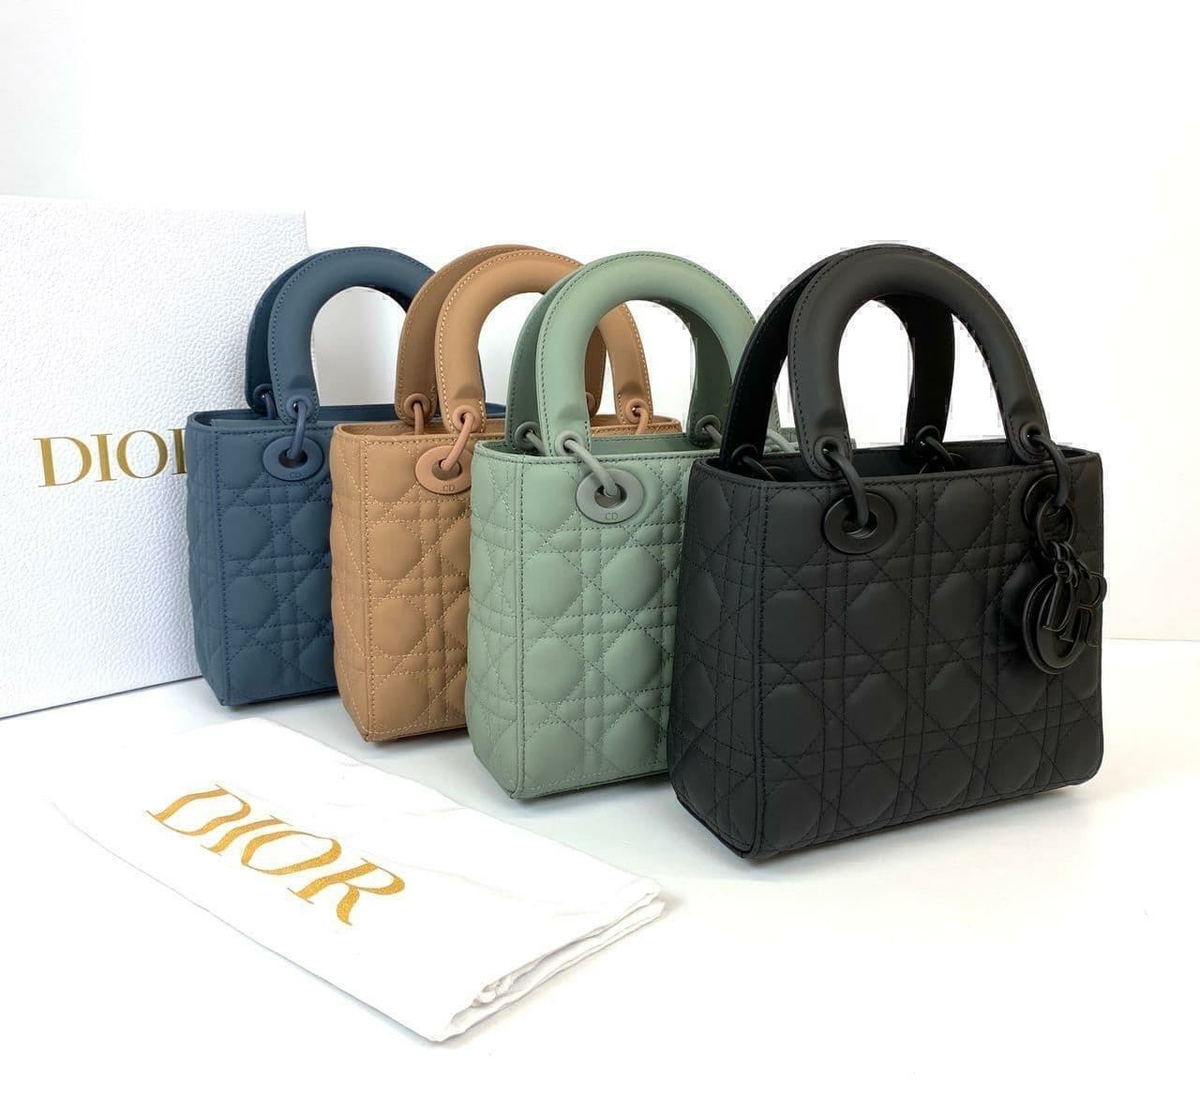 Dior сумка #6 в «Globestyle» арт.669888VU